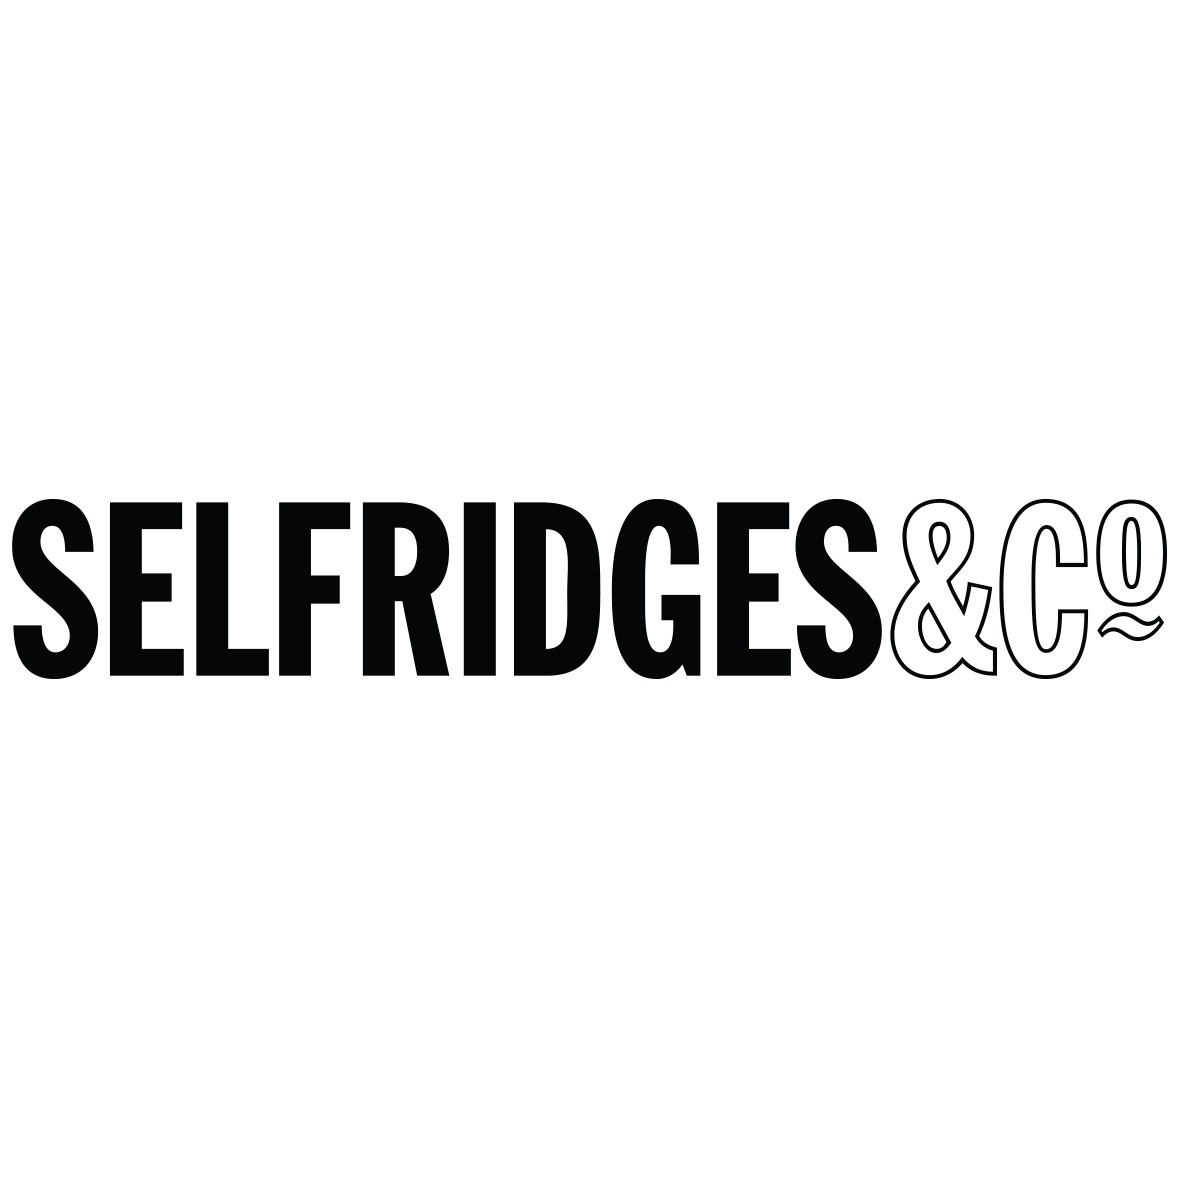 Selfridges&CQ